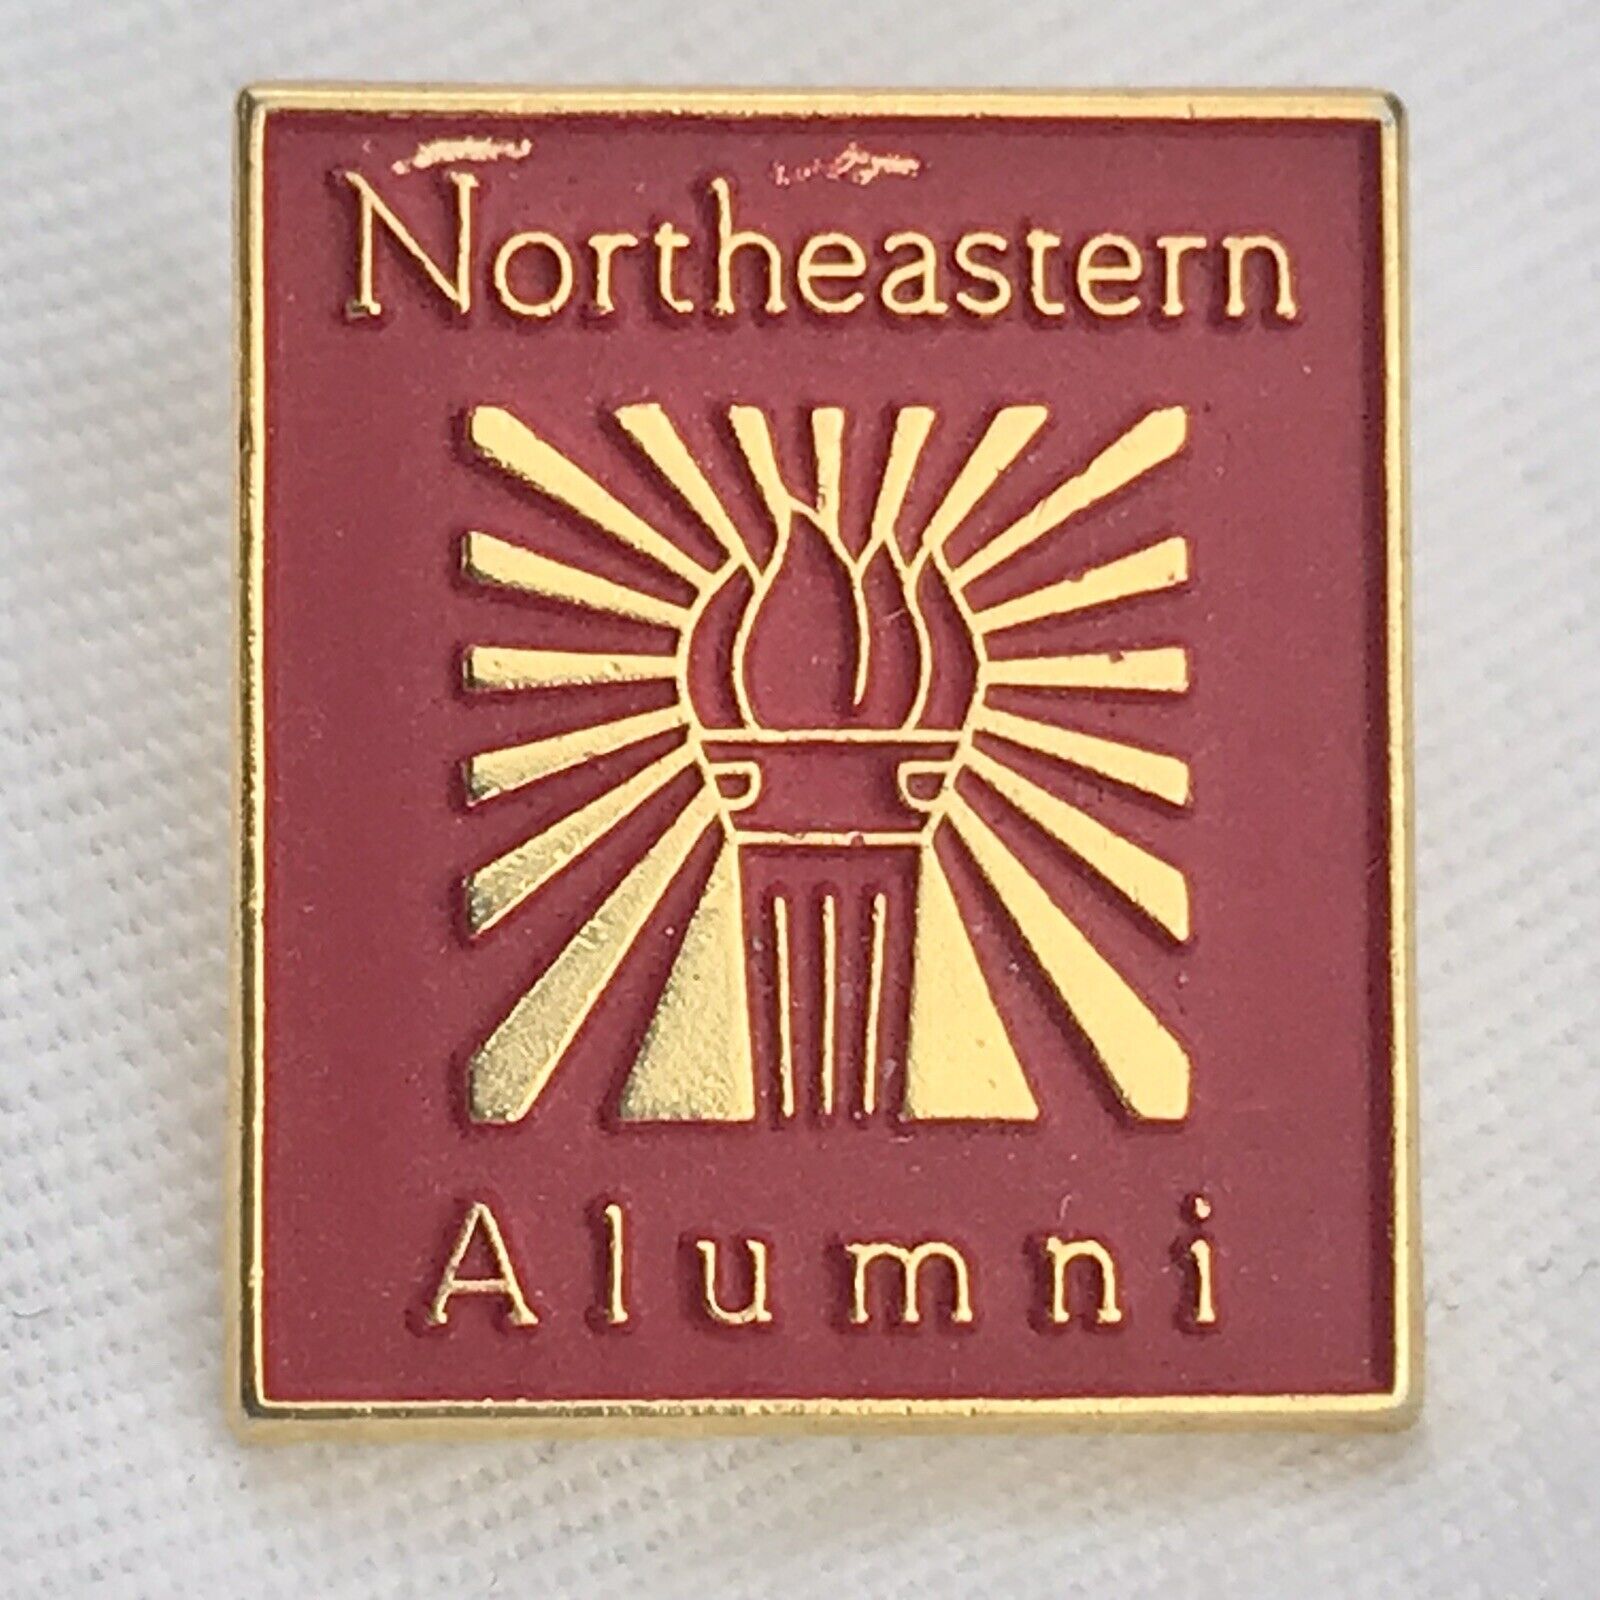 Northeastern University Alumni Vintage Pin